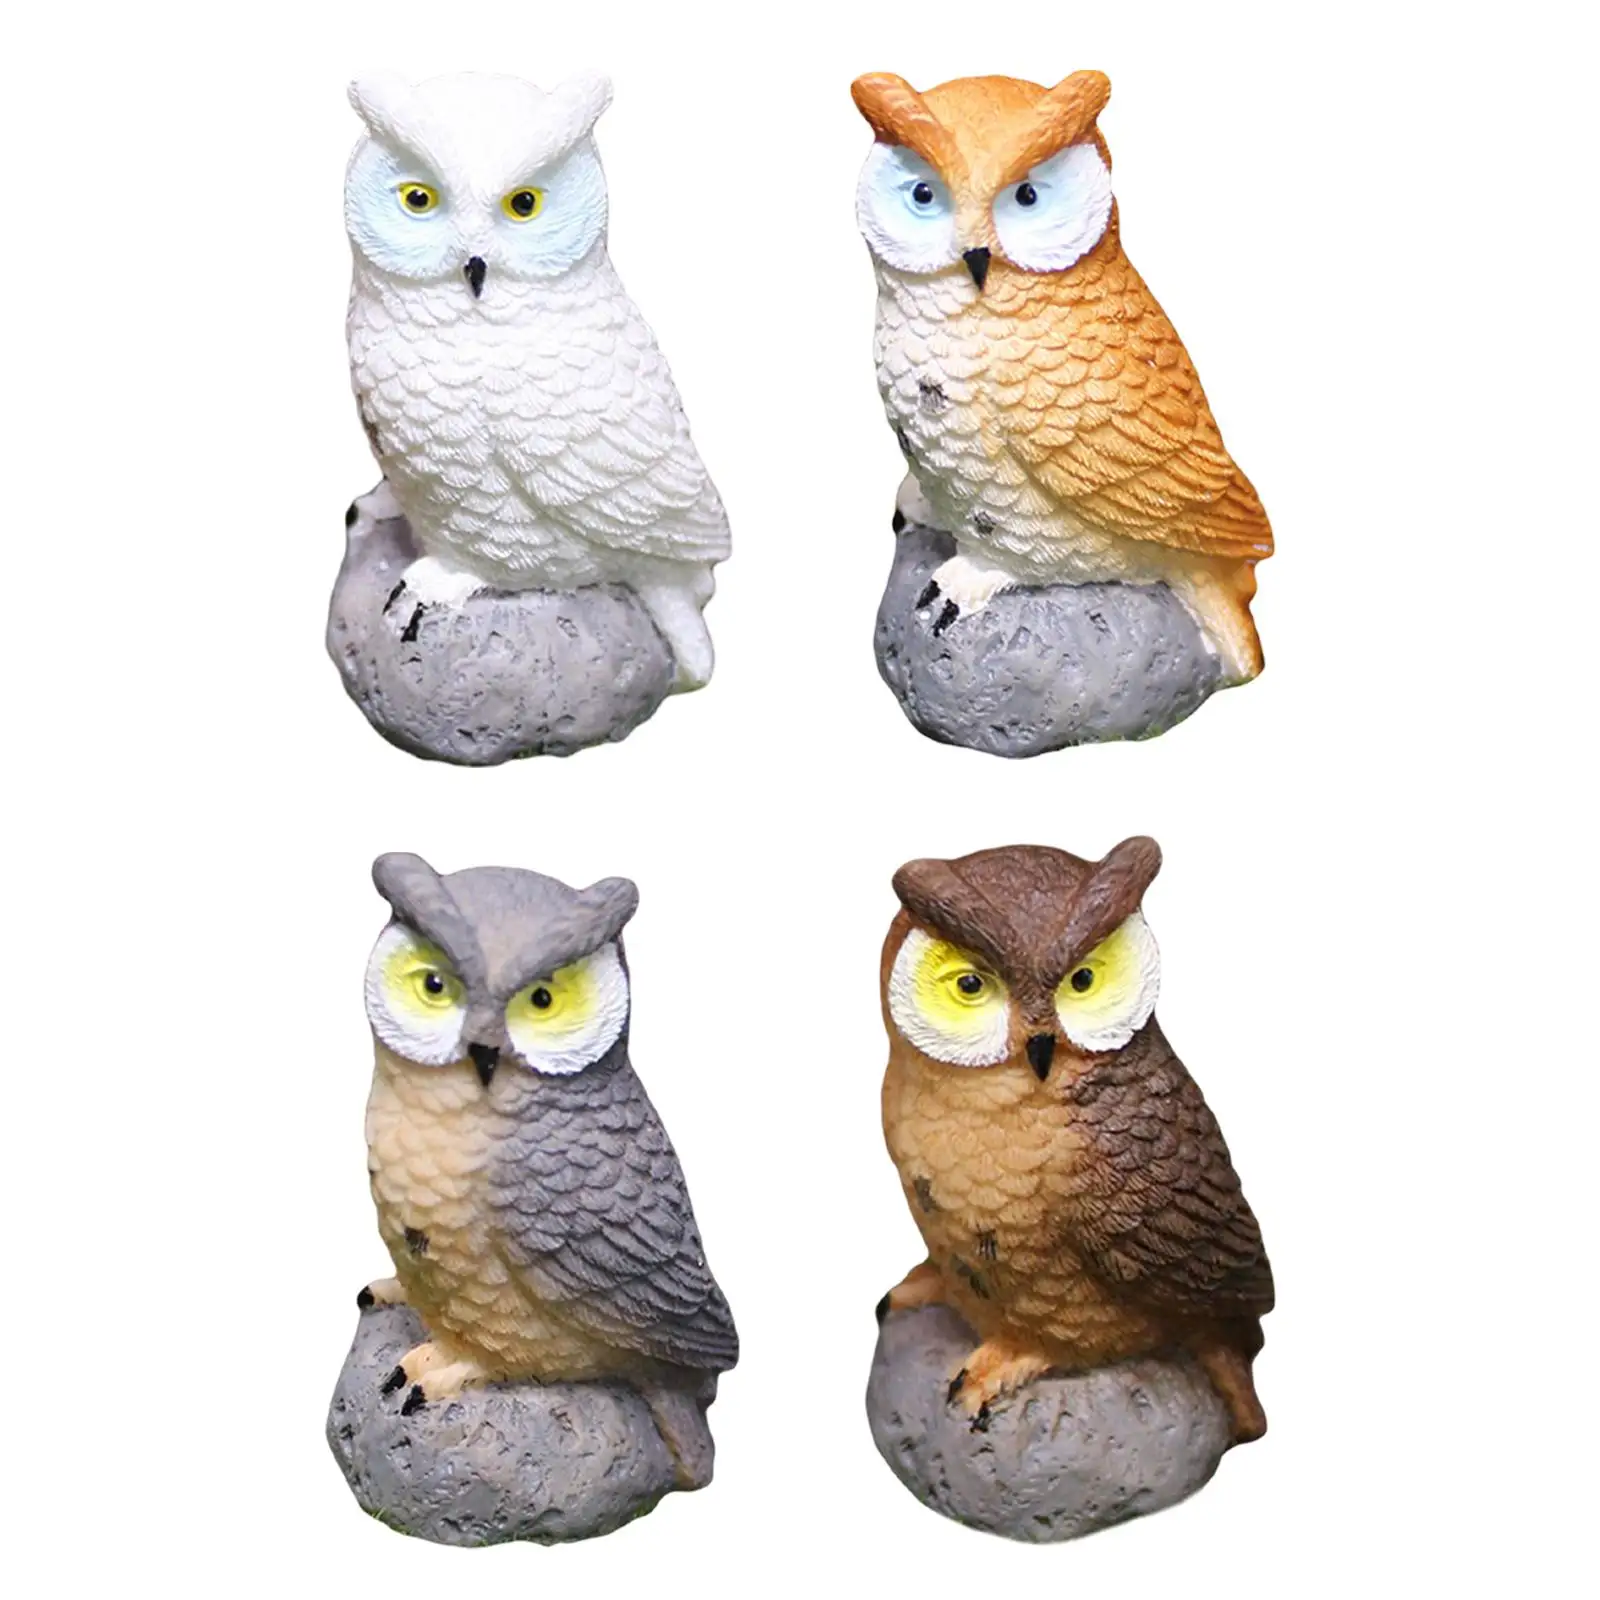 4x Смоляные миниатюрные фигурки птиц и миниатюрных сов для декора бонсай4